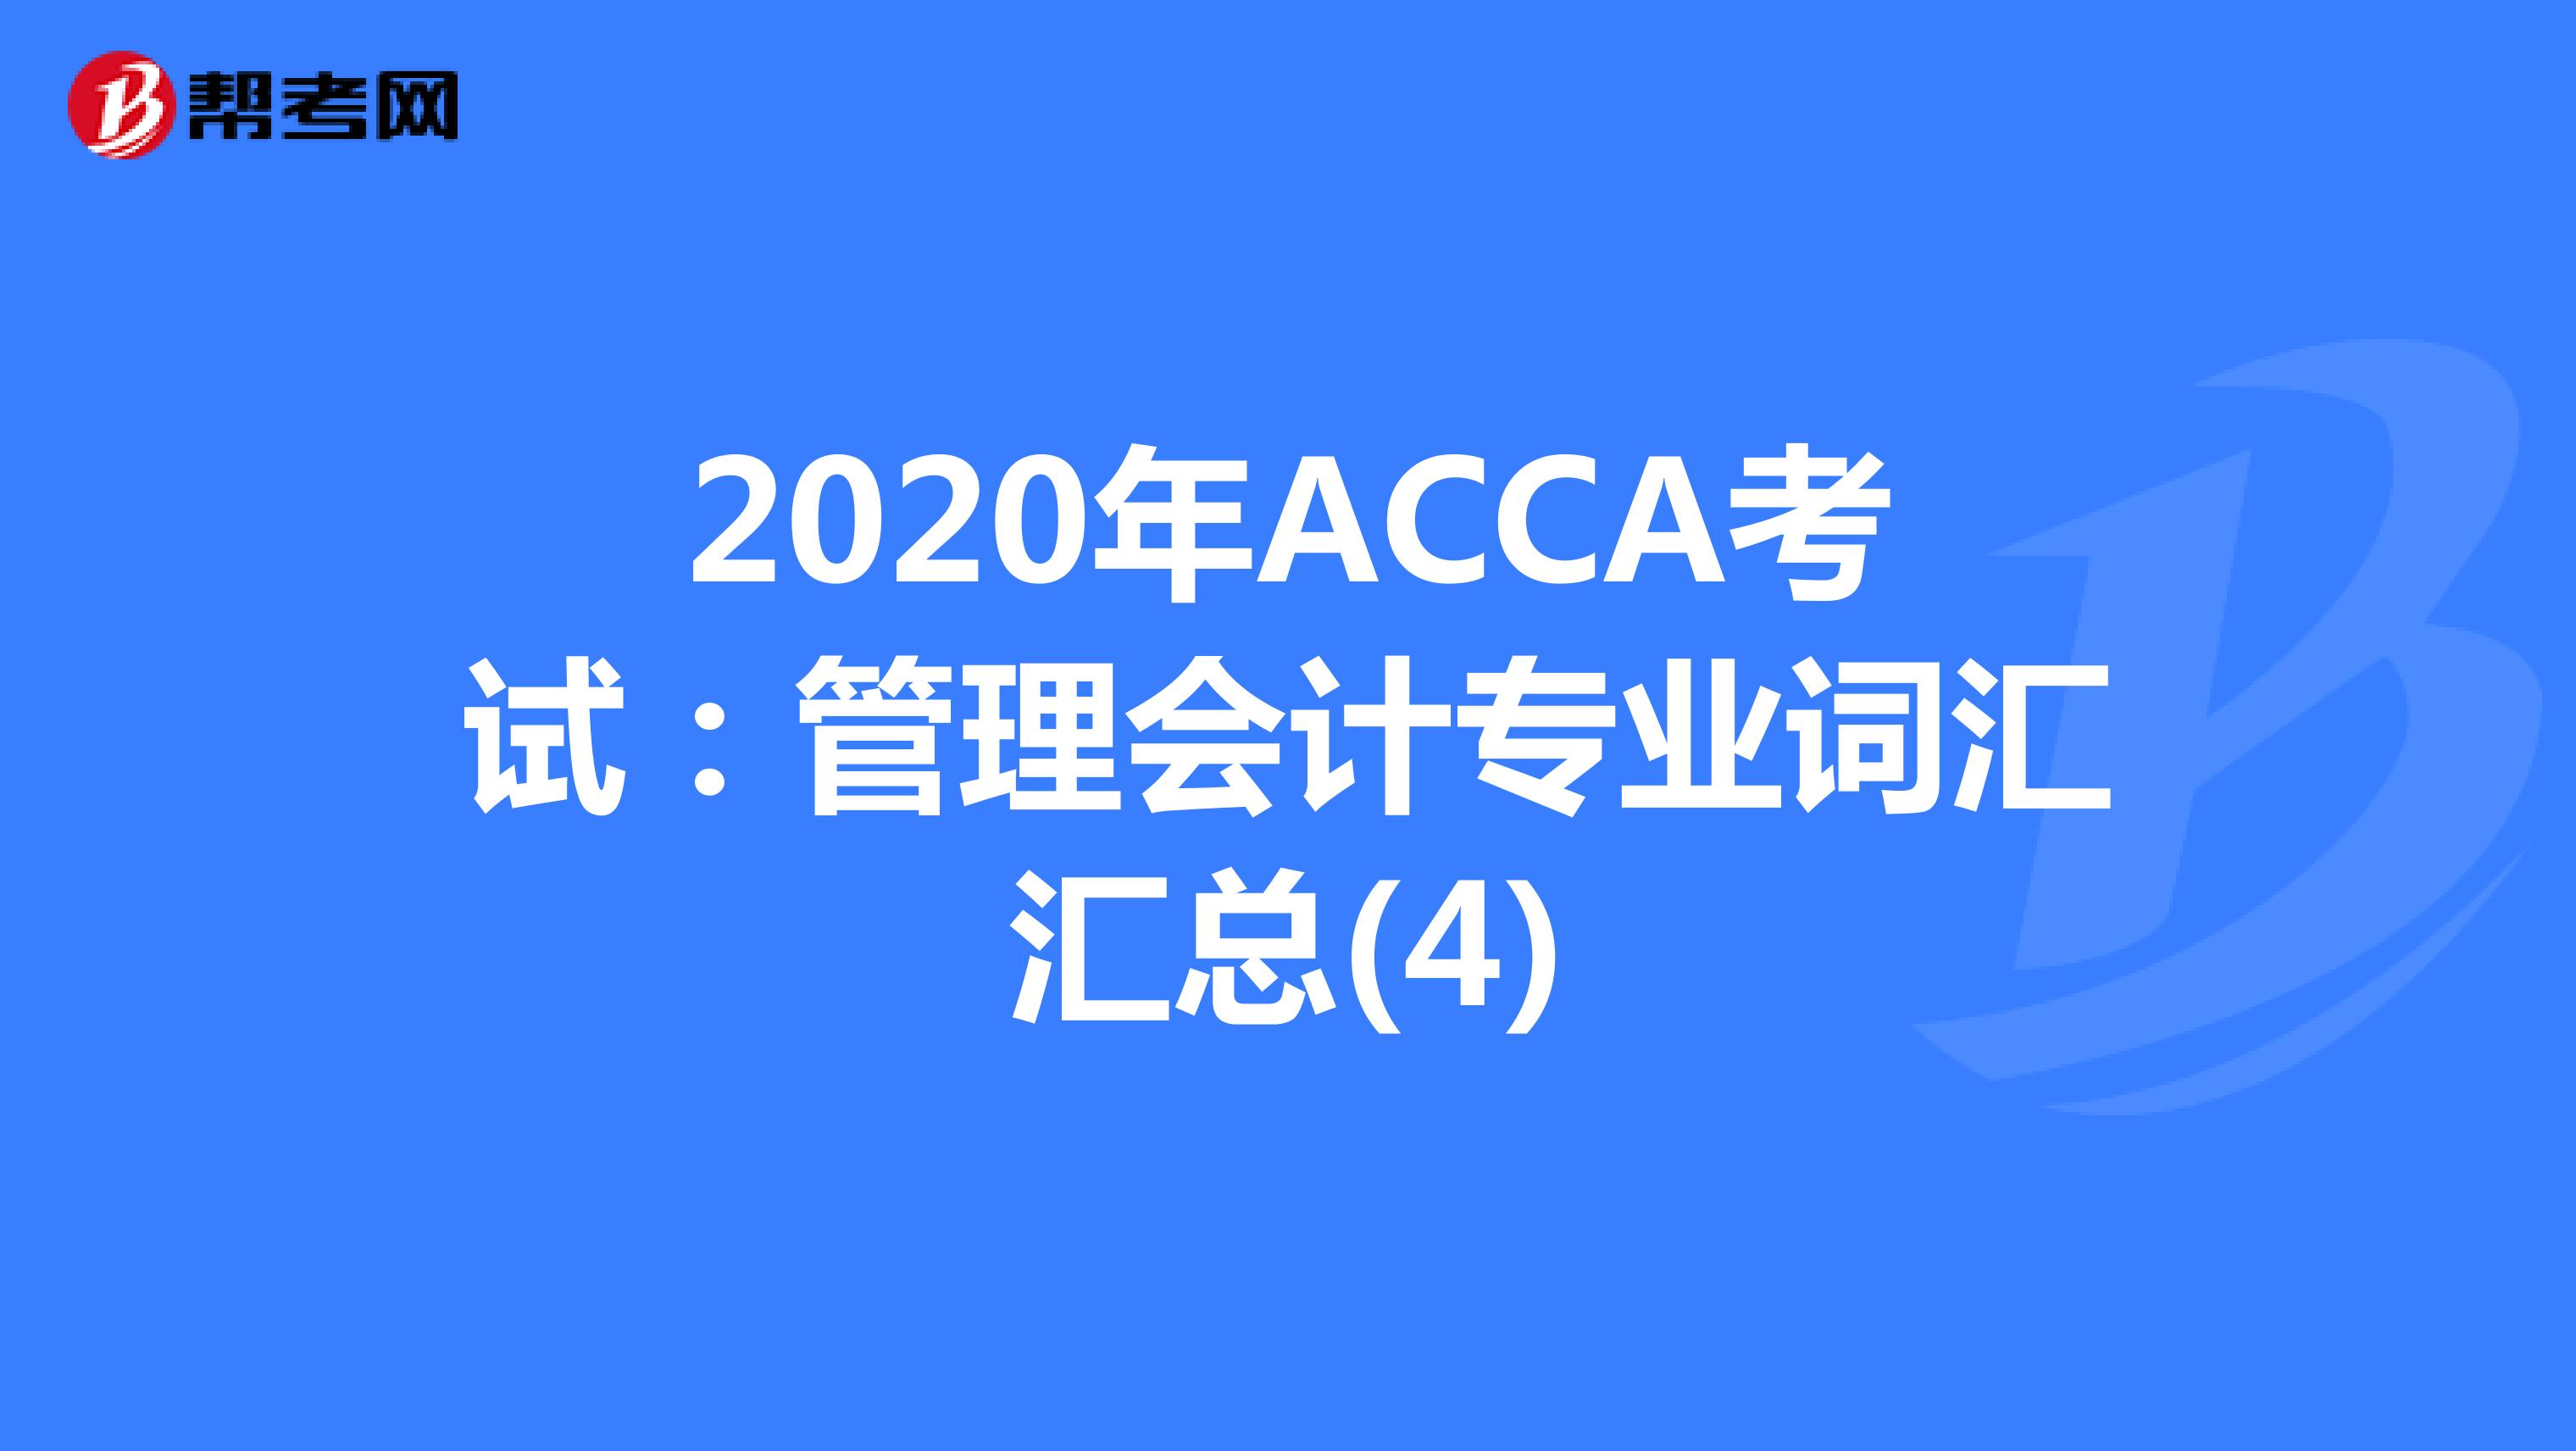 2020年ACCA考试：管理会计专业词汇汇总(4)